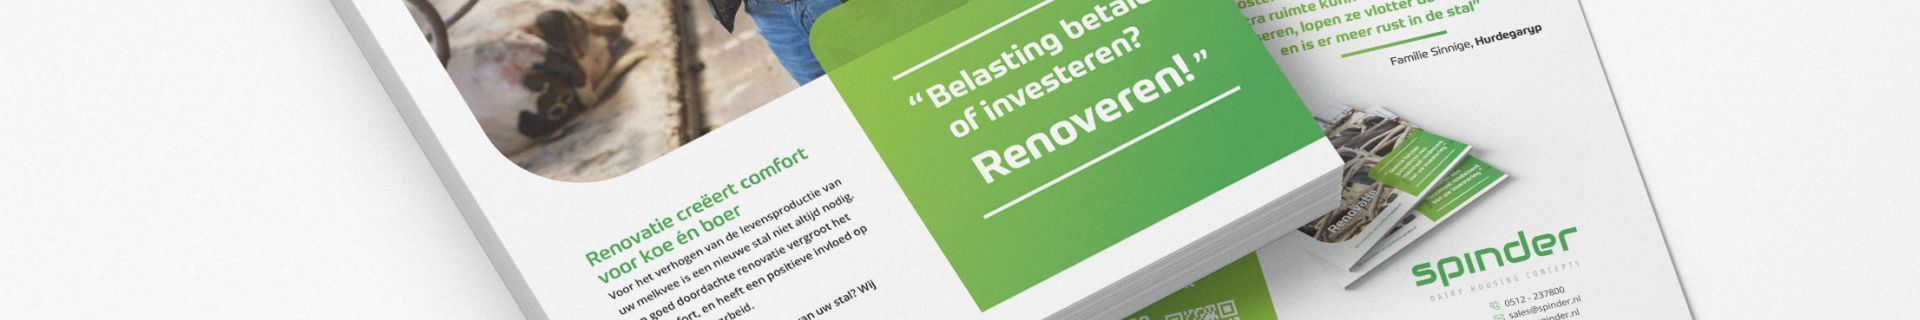 Spinder renovatie folder: belasting betalen of investeren? renoveren!